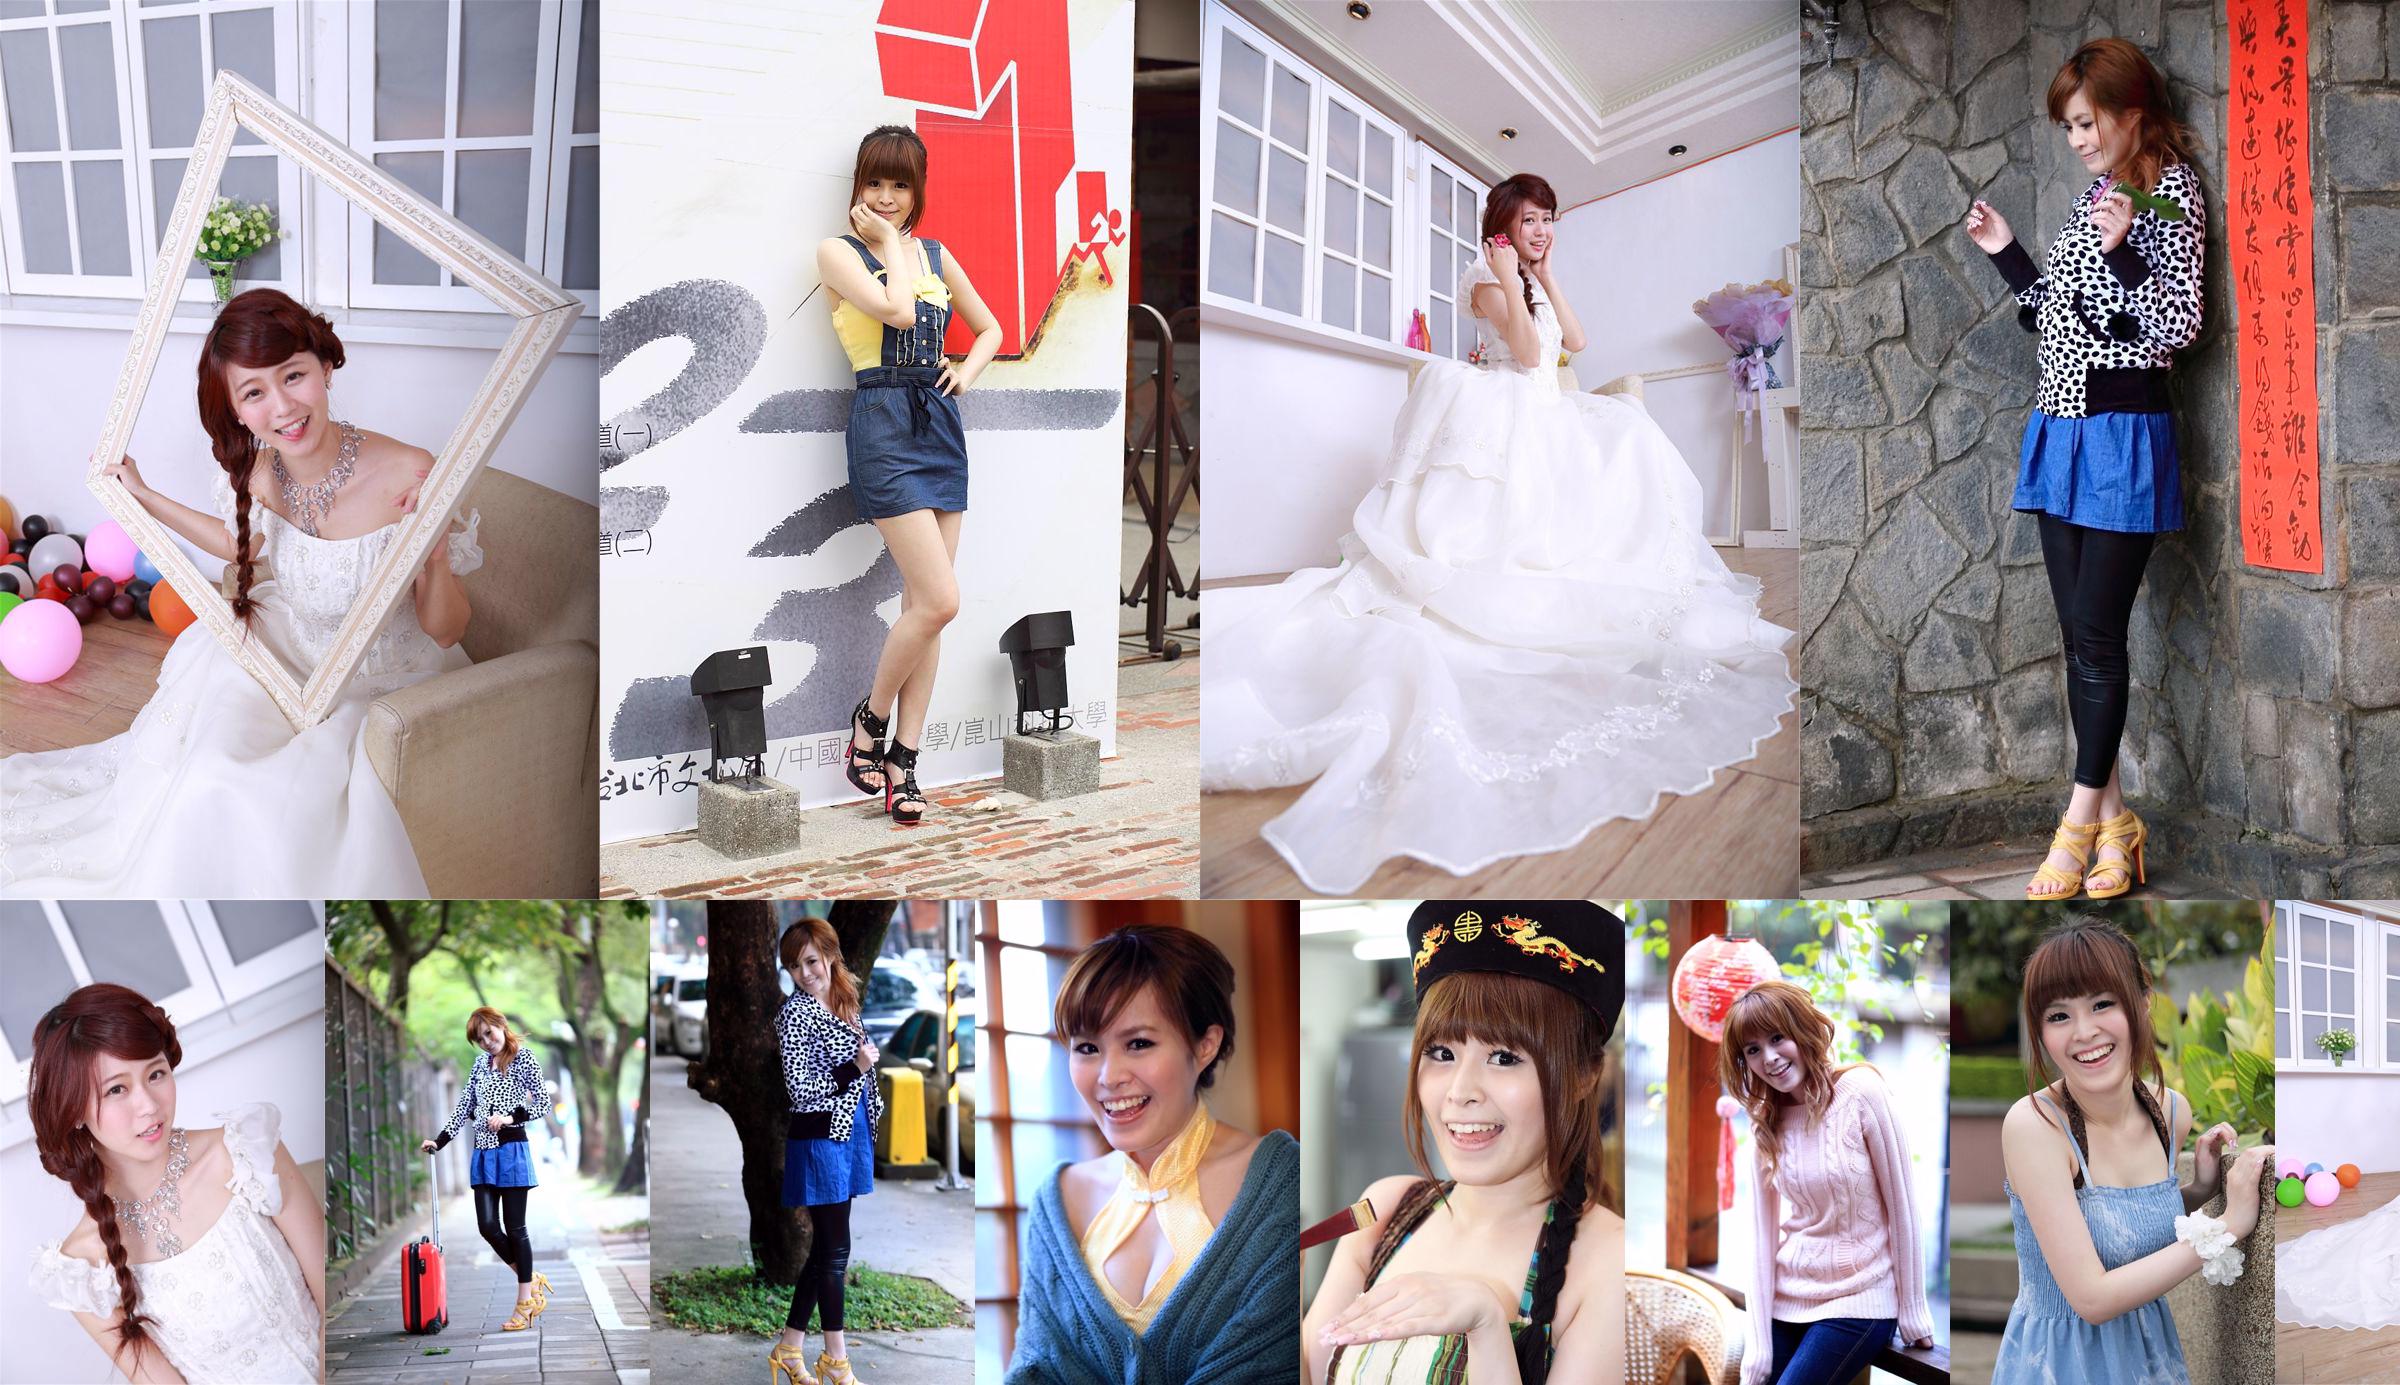 Taiwan's innocent girl Bai Bai/Li Yixuan "Mechanical and Electrical Girls' Wedding Studio Shooting" No.8812f5 Page 2